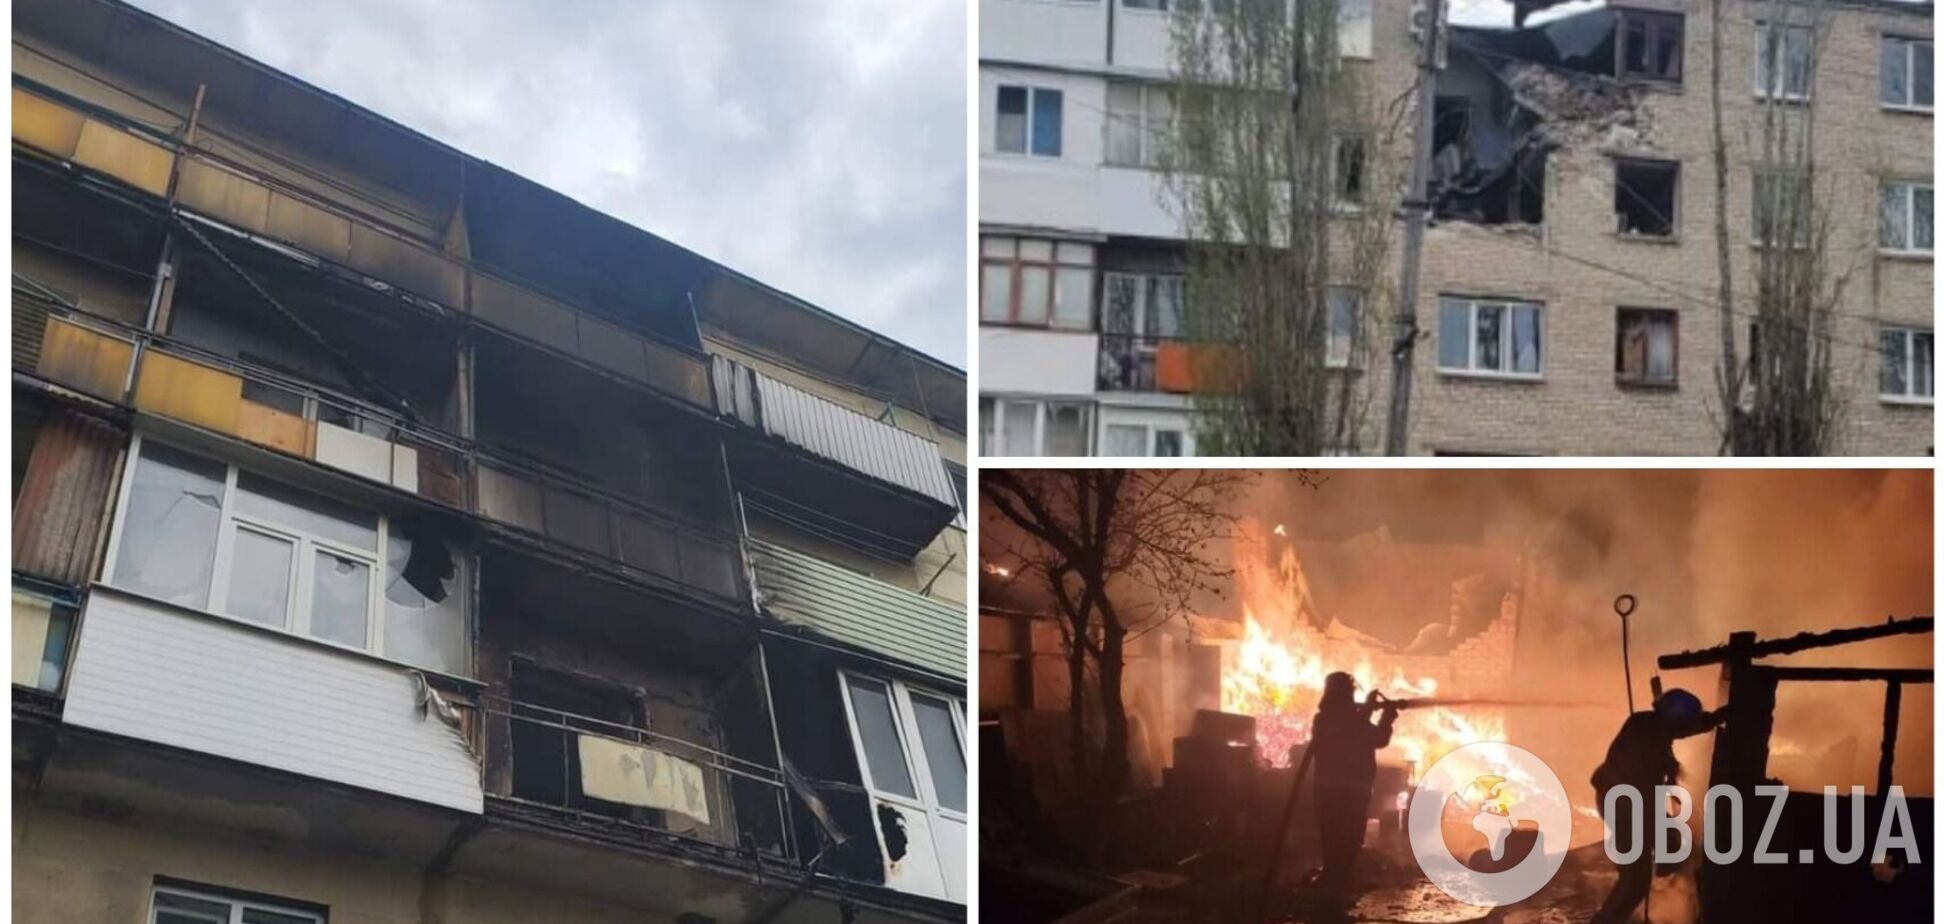 Оккупанты устроили массированный обстрел Луганщины на Пасху, горели дома: людей спасали из-под завалов. Фото